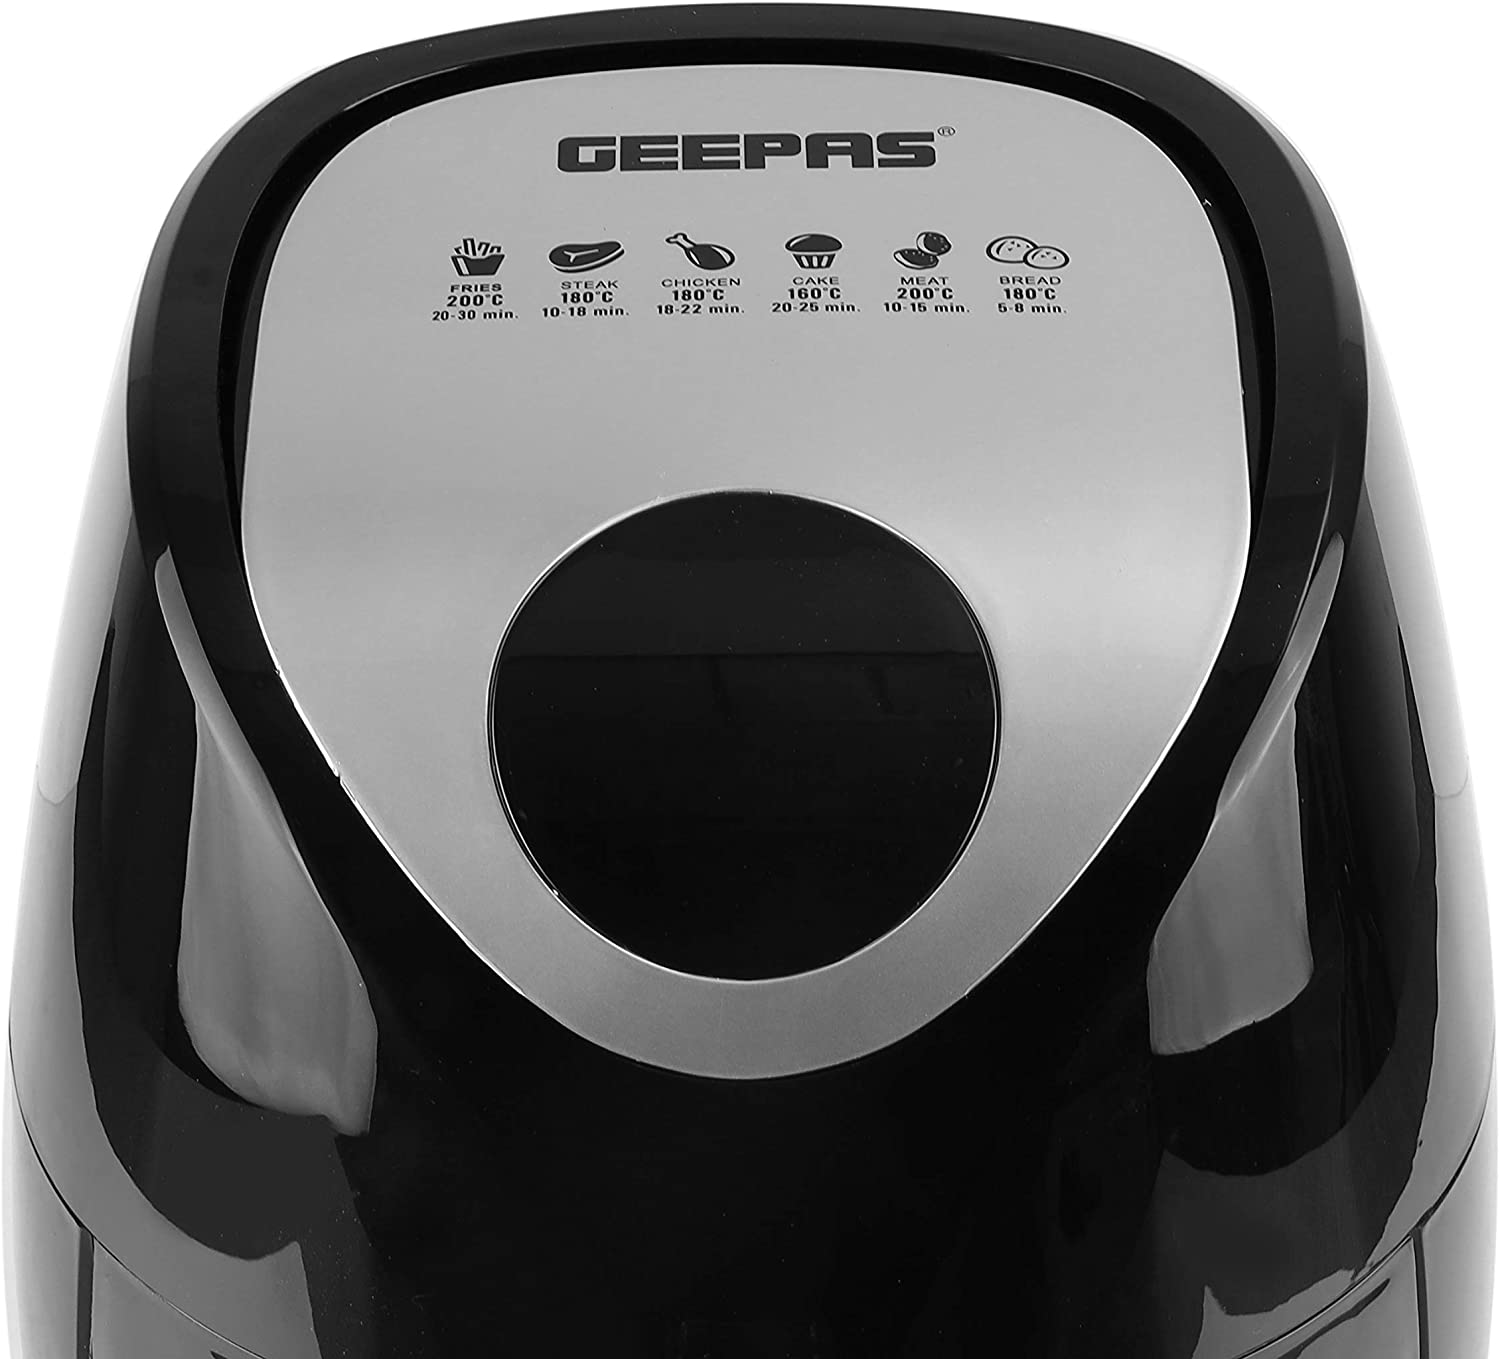 Geepas Digital Air Fryer Black 3.2 ltrs